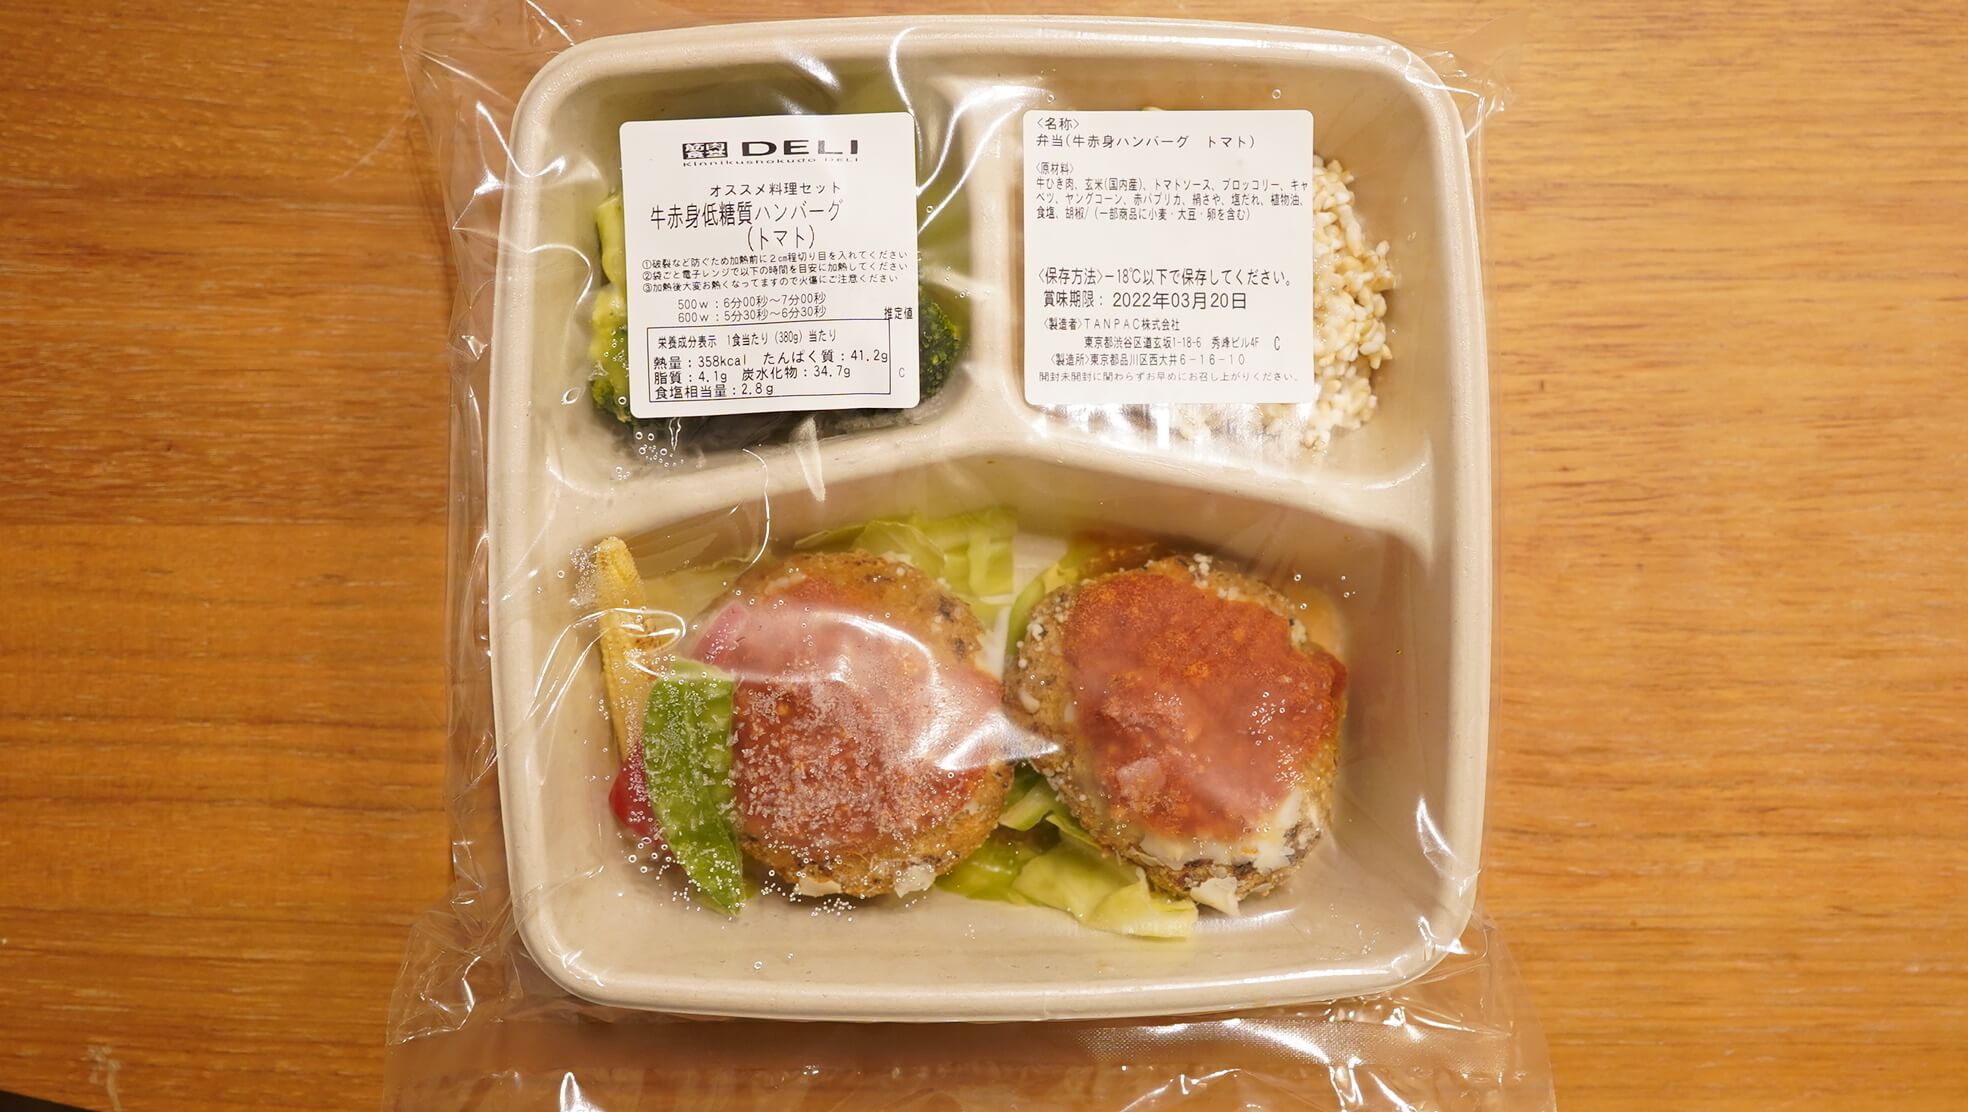 通販で買える宅配弁当「筋肉食堂deli」のメニュー「牛赤身低糖質ハンバーグ」の写真